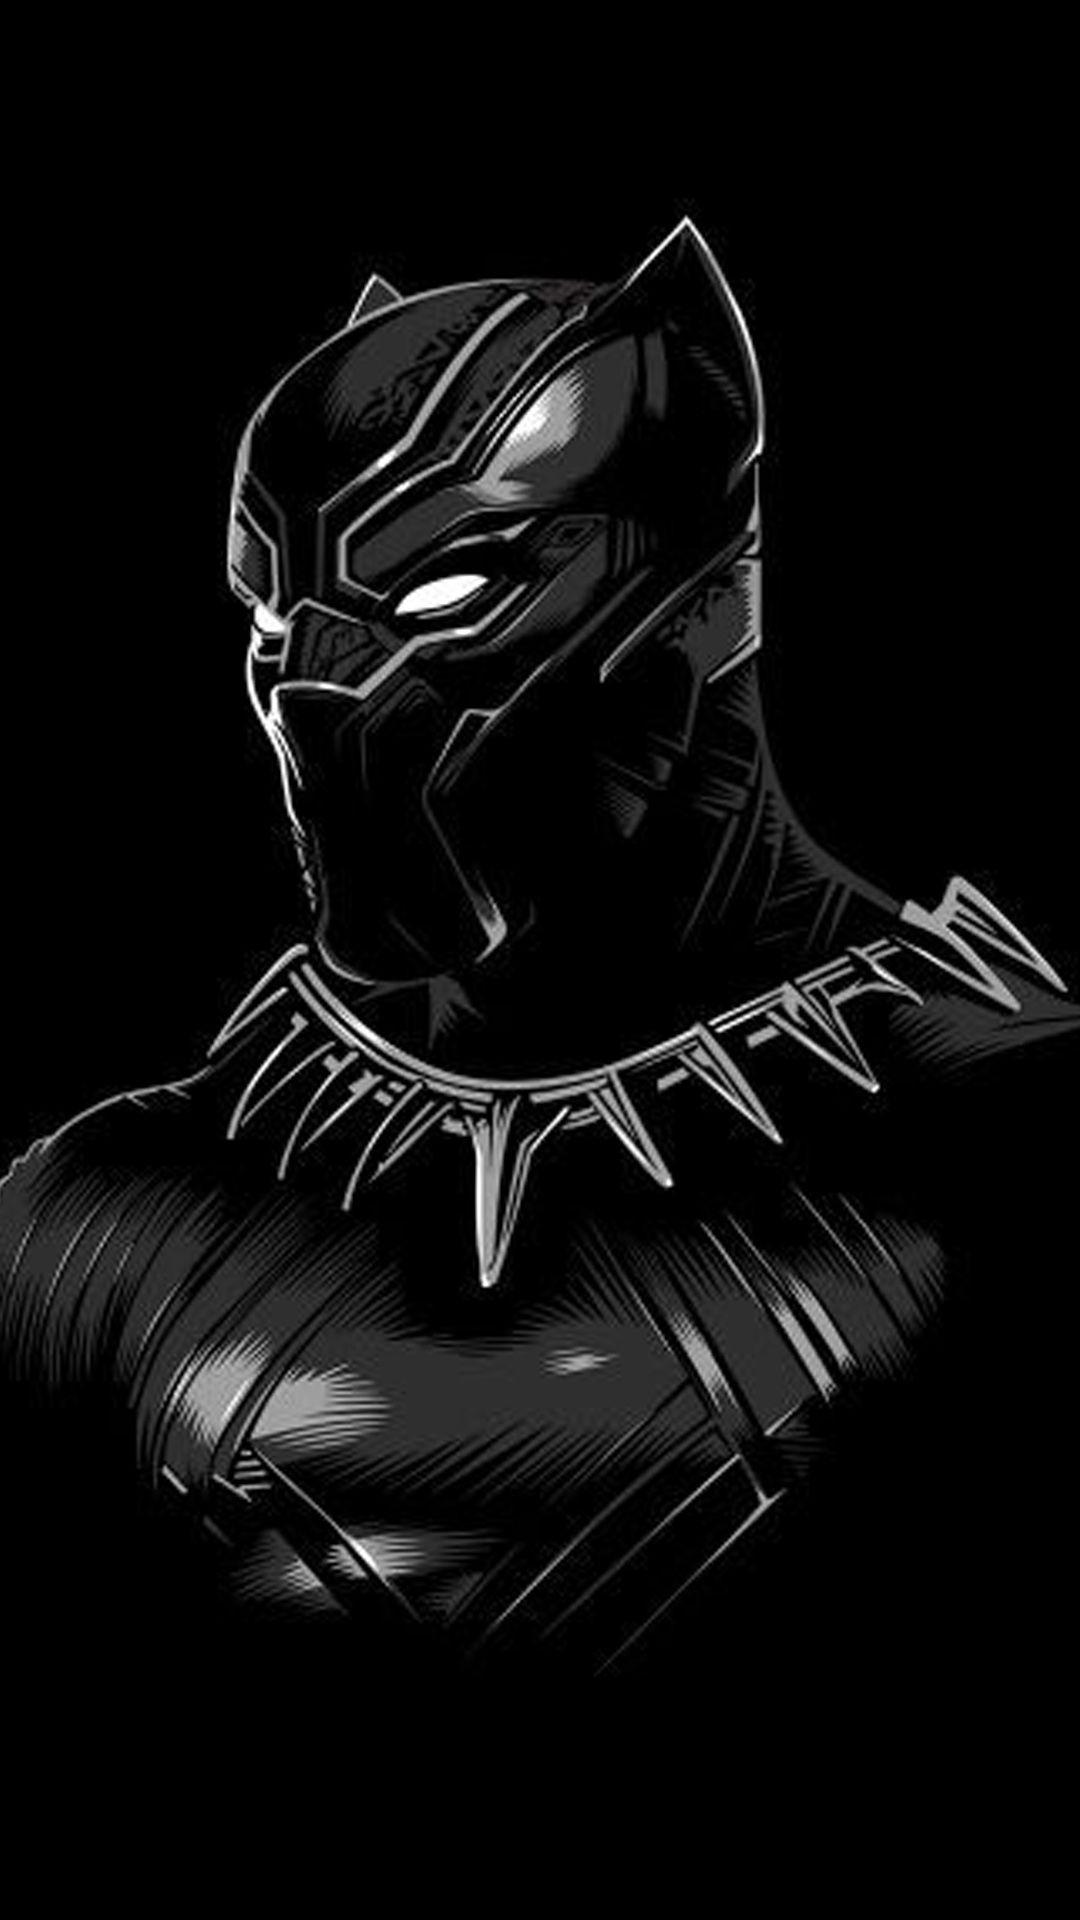  Black  Panther  Superhero  Wallpapers  Top Free Black  